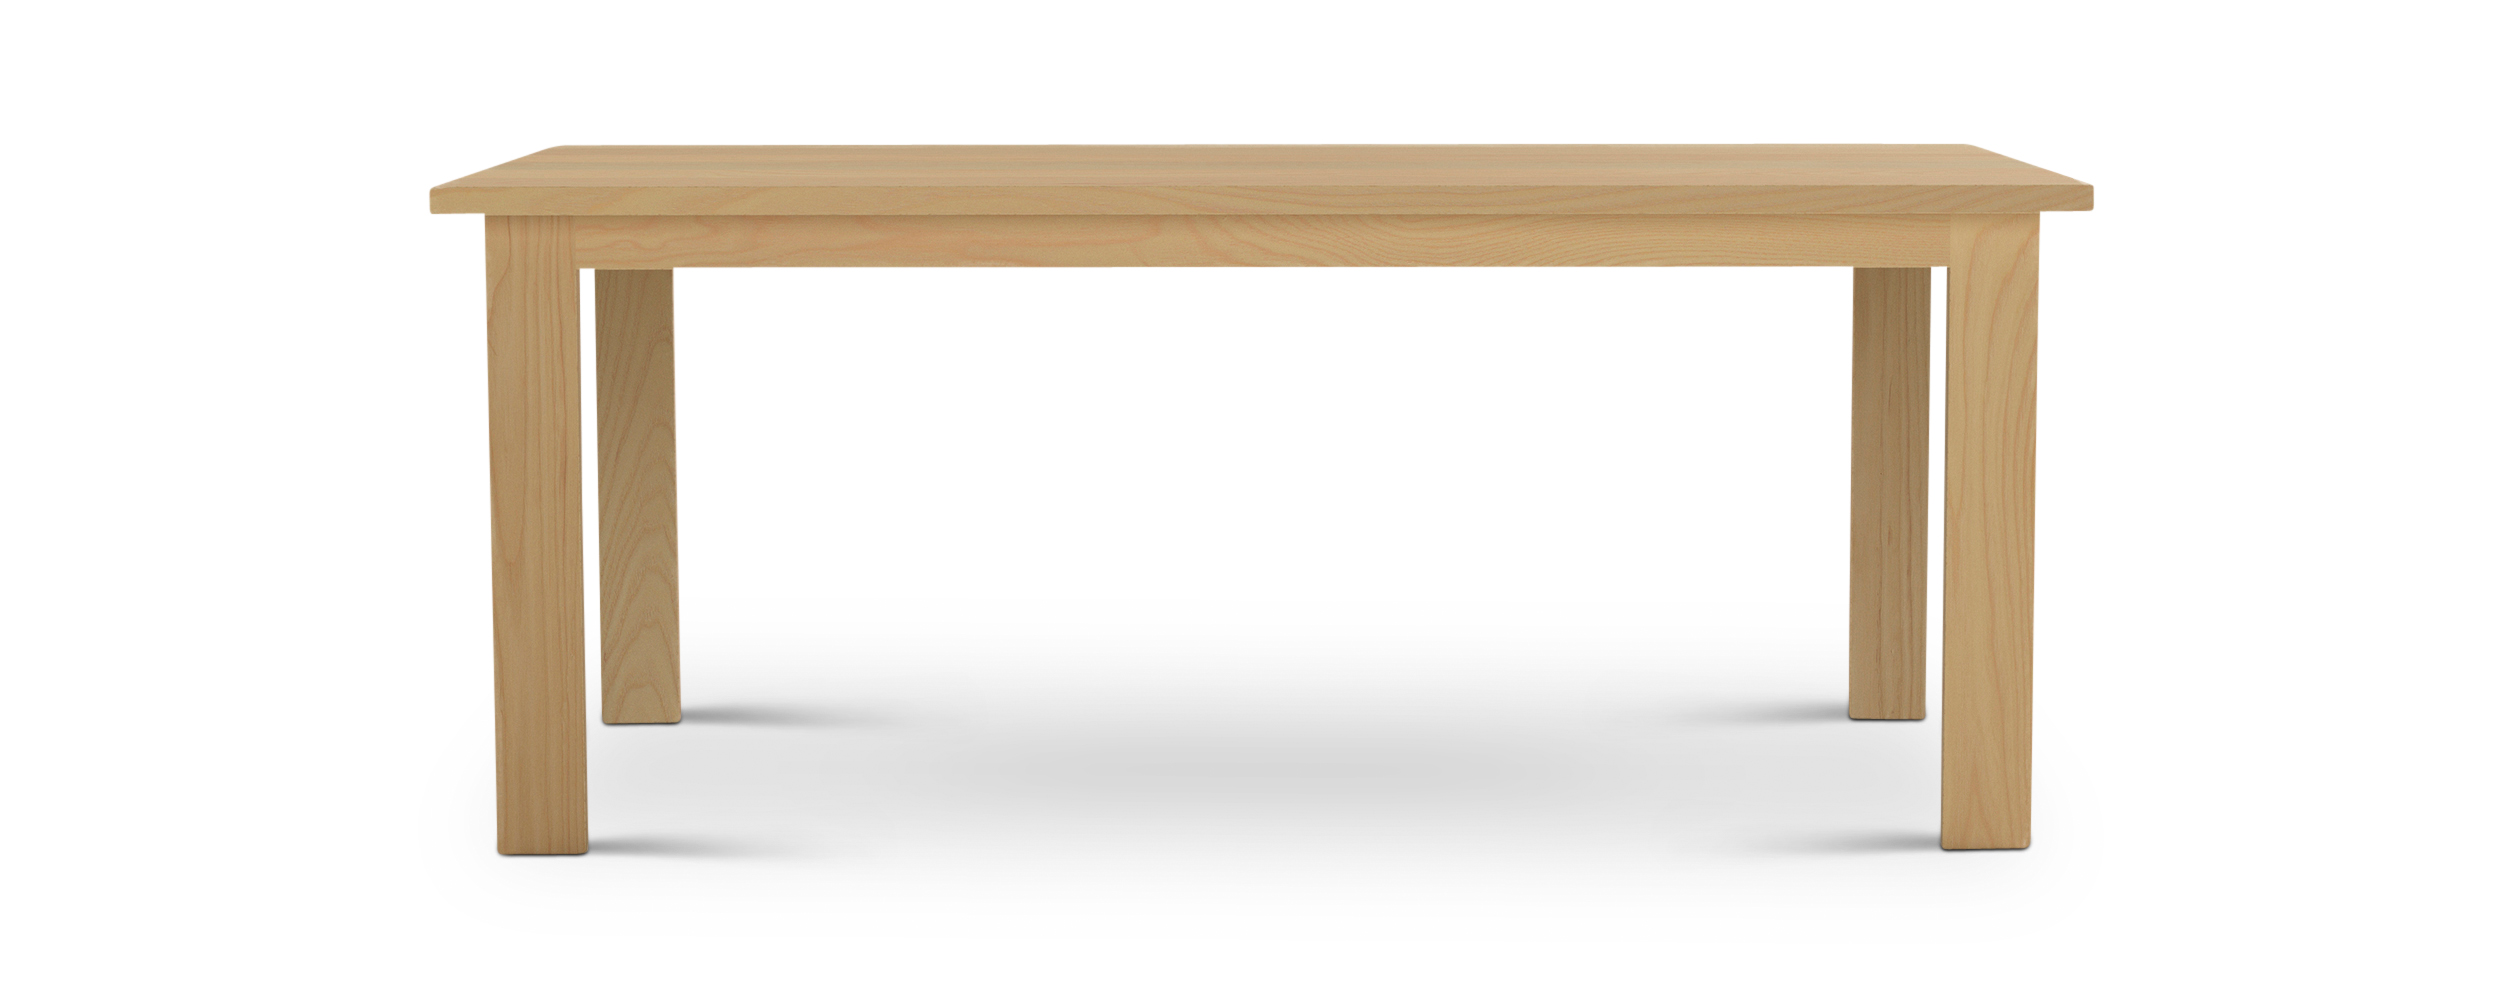 Series 424 Thin rectangular wooden legs modern table 72" long